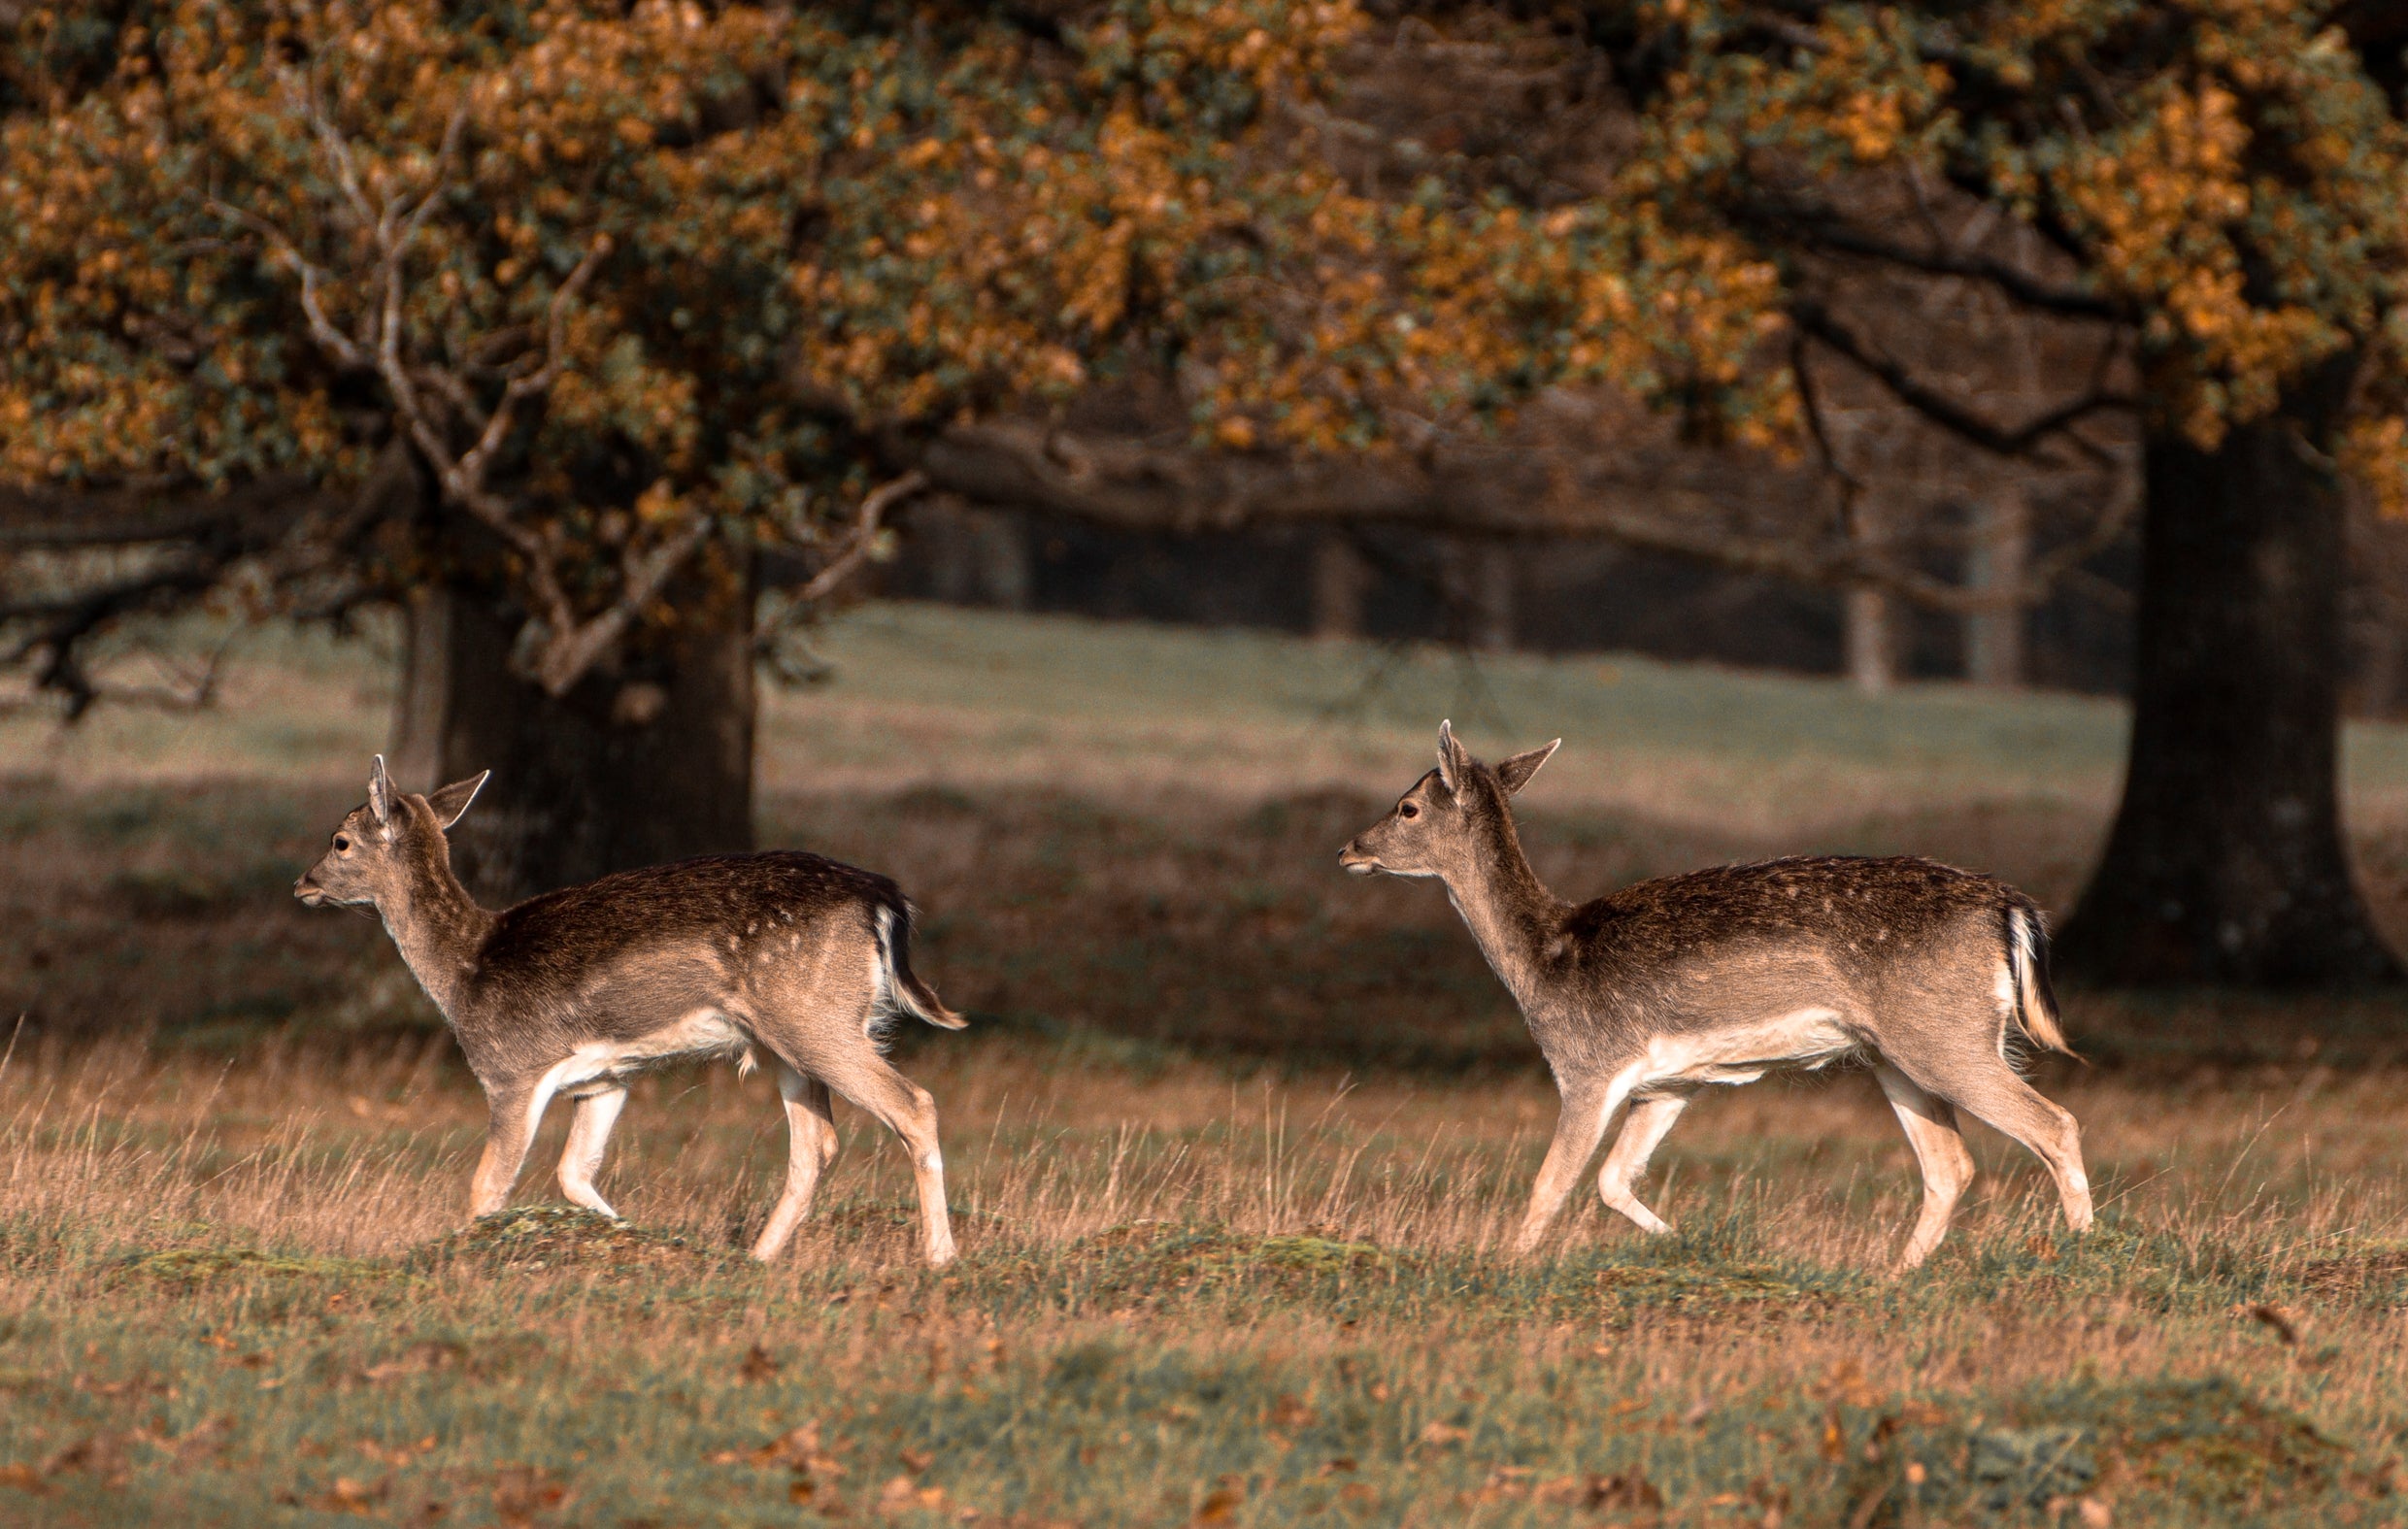 Wild Deer running through a field near some mature oak trees.